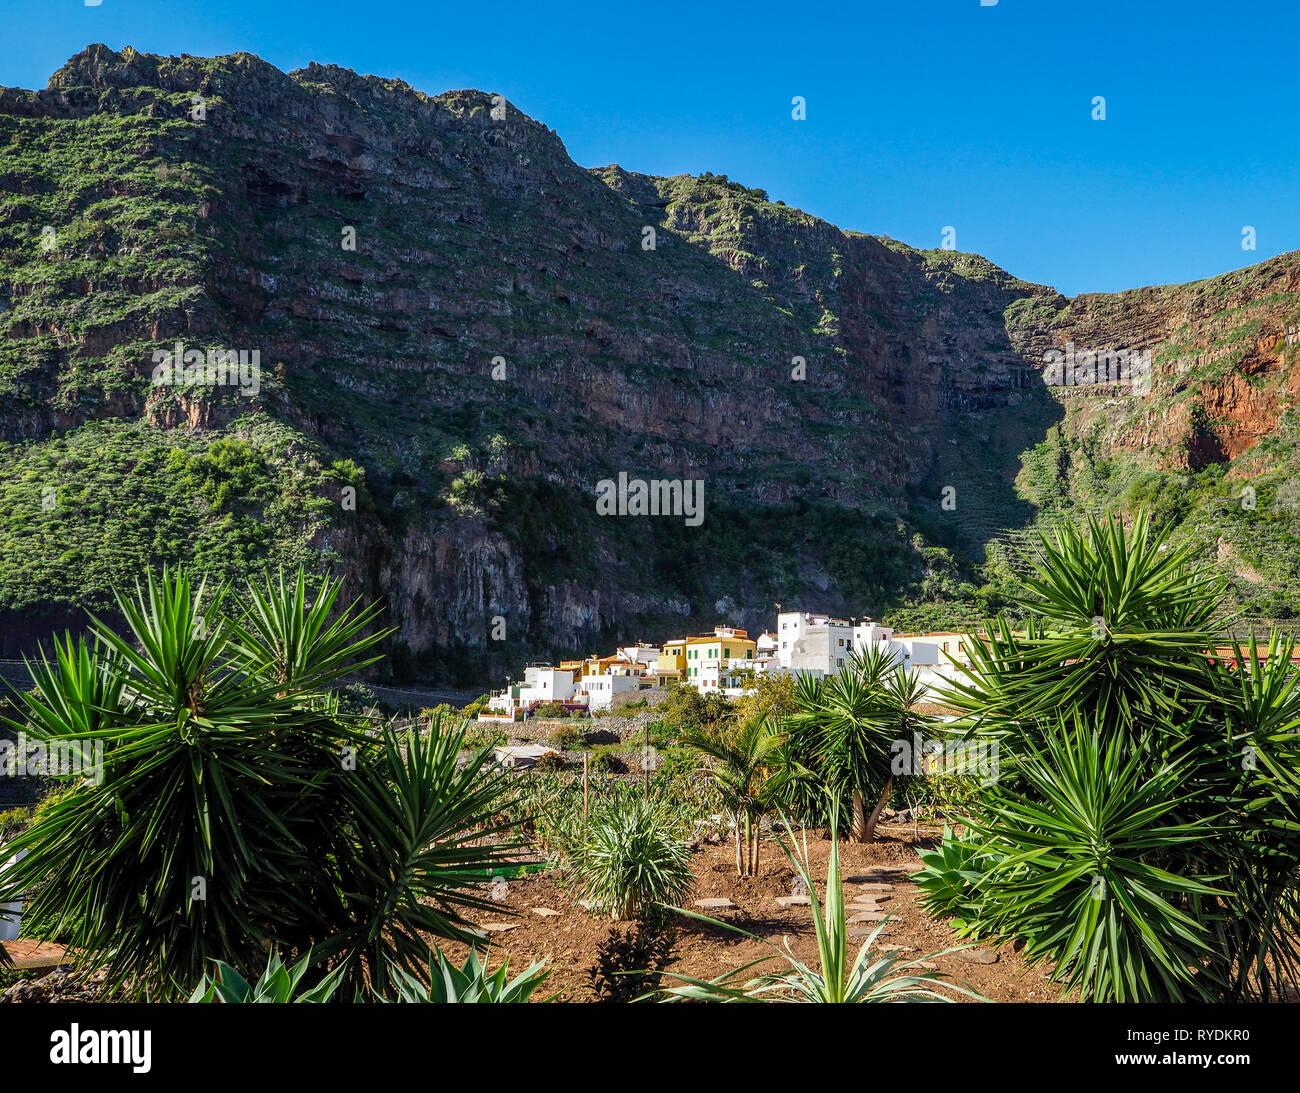 Das hübsche Dorf Agulo drastisch durch die nördliche Küste von La Gomera in einem Amphitheater von vulkanischen Klippen - Kanarische Inseln Stockfoto